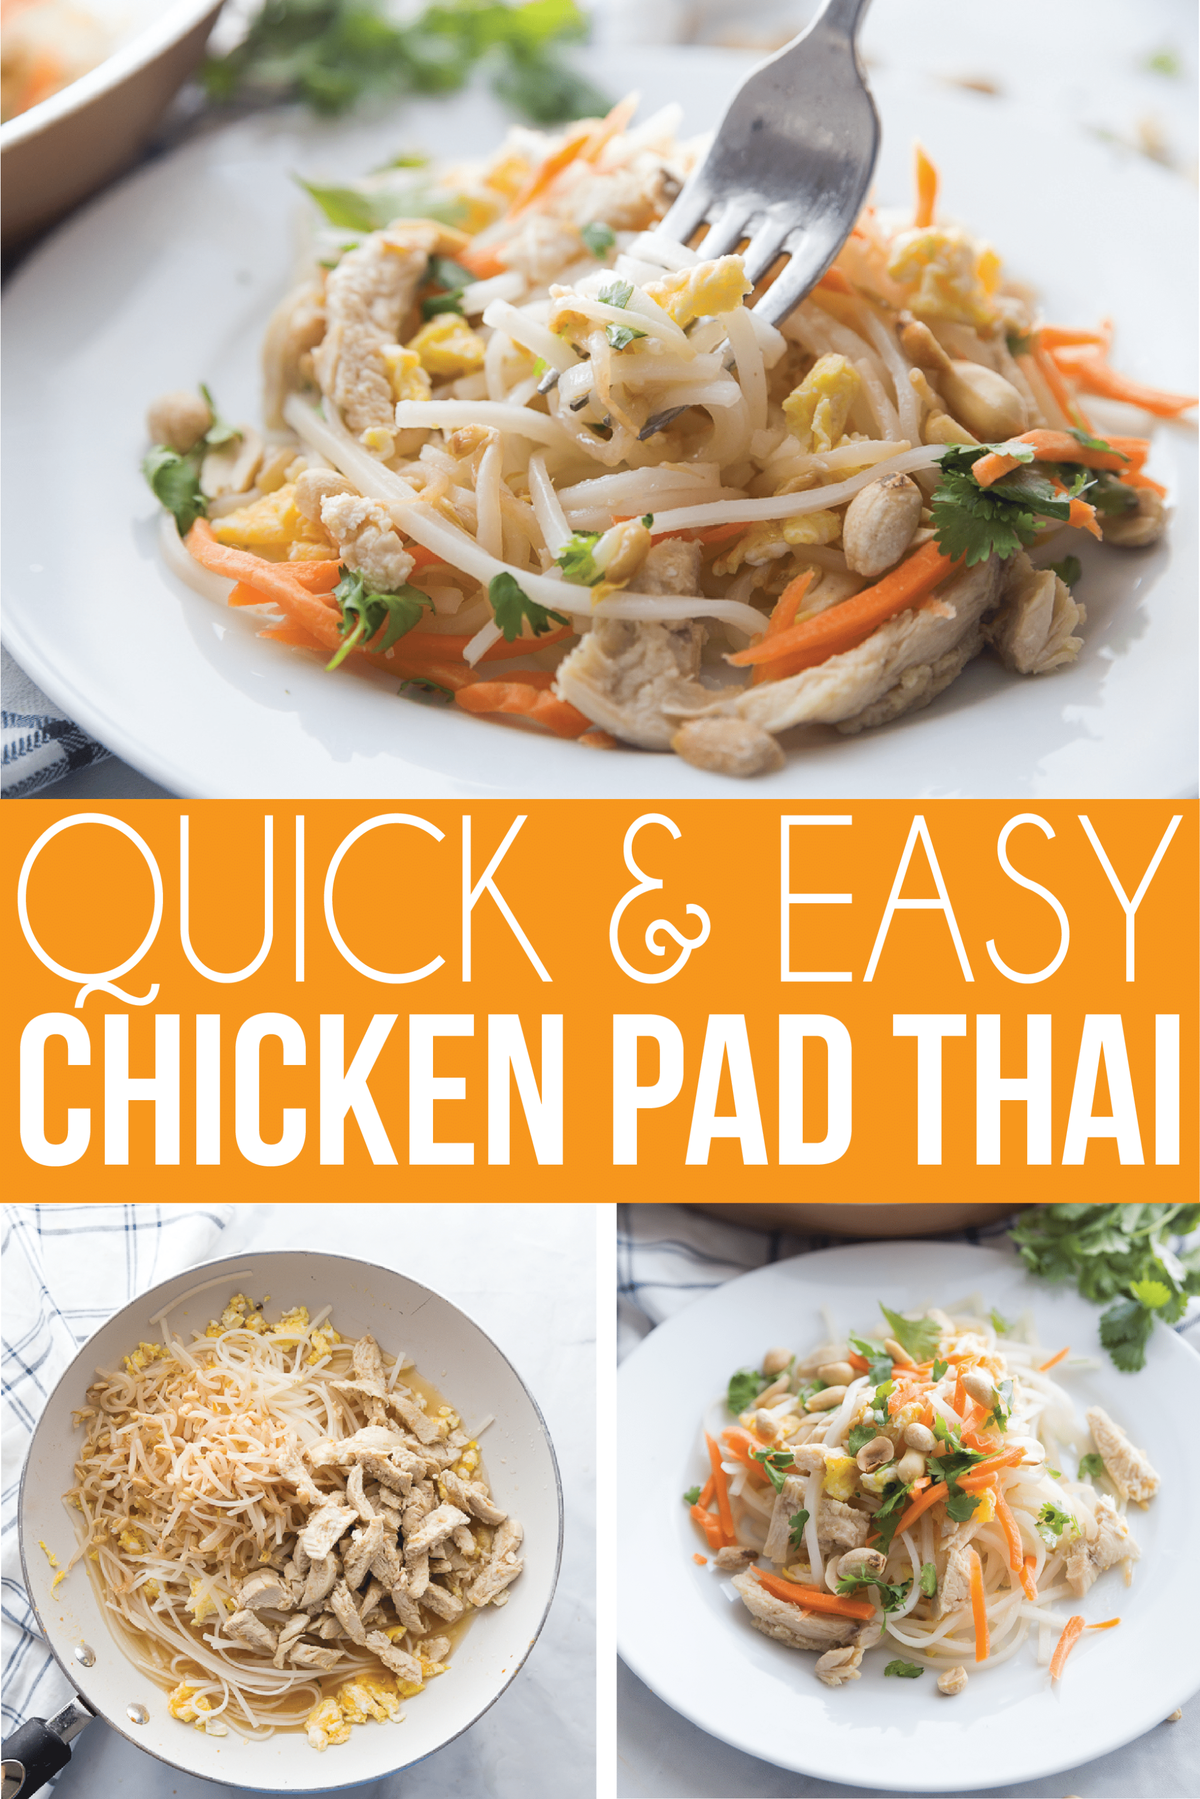 Una receta fácil de Pad Thai que se puede preparar con pollo o camarones. ¡O elige tofu para hacer de esta una gran receta vegetariana o vegana de pad Thai también! ¡Es la mejor receta de Pad Thai que he encontrado y se puede cubrir con cualquier ingrediente saludable que desee!